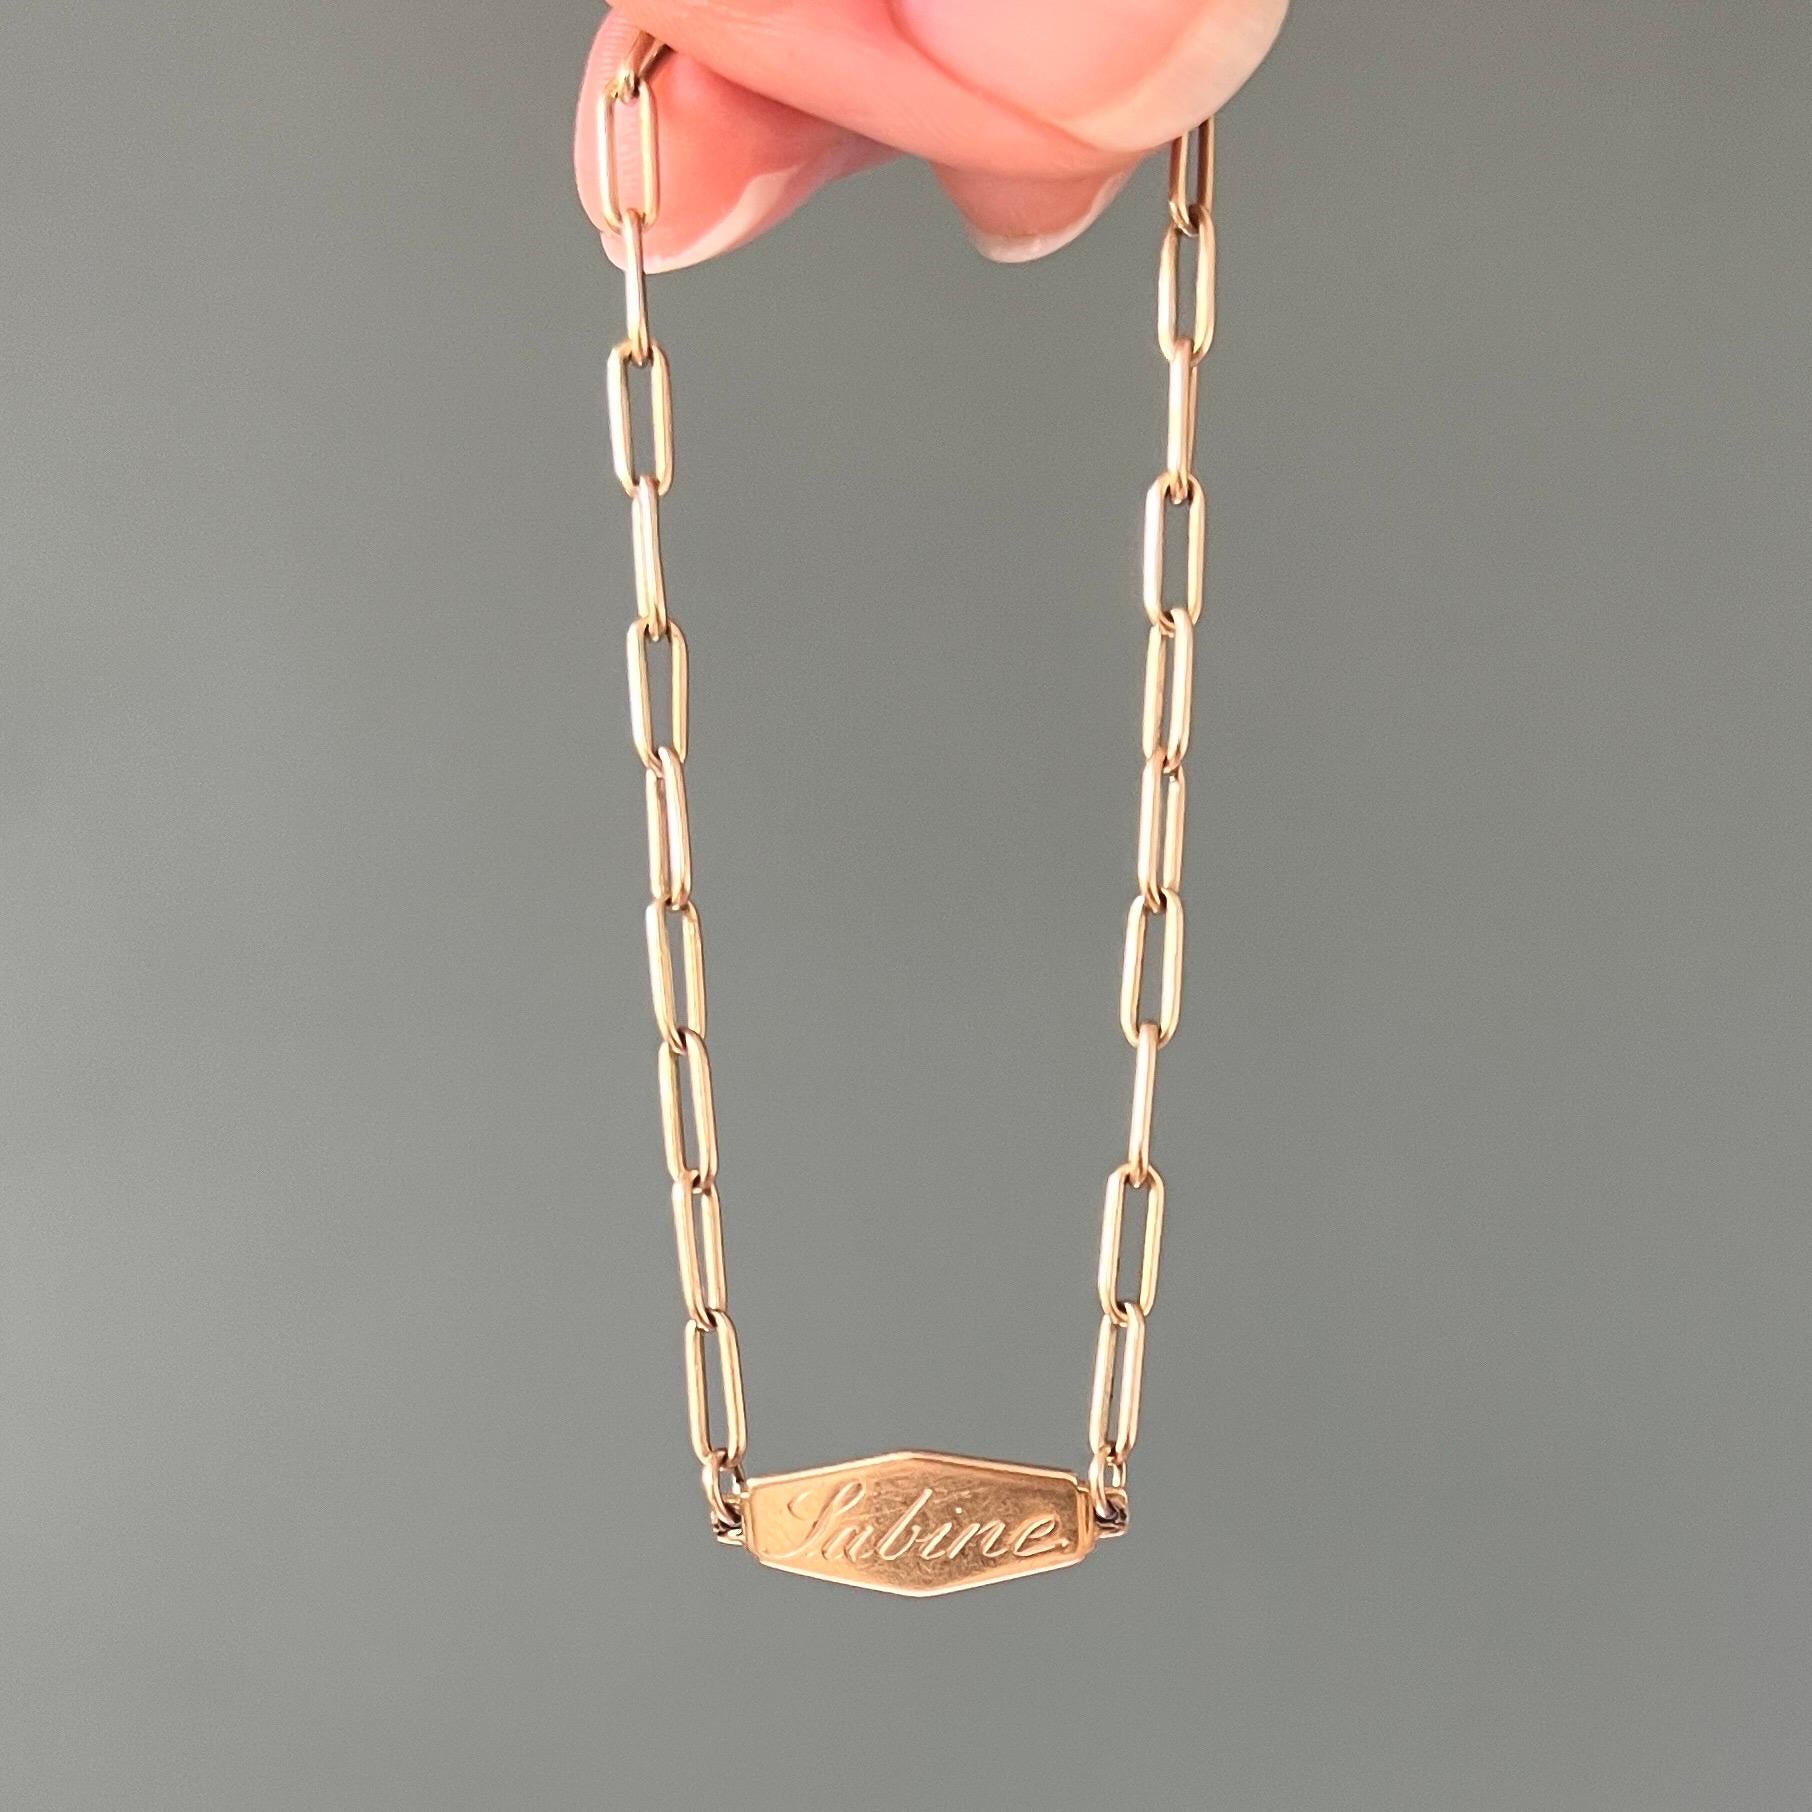 Ein Vintage1 4 Karat Gelbgold Verschluss Gliederarmband. Dieses Gliederarmband eignet sich auch für ein Charms-Armband, an dem Charms mit einer schönen Erinnerung getragen werden können. Das Armband ist ein zeitloses Must-Have und lässt sich perfekt